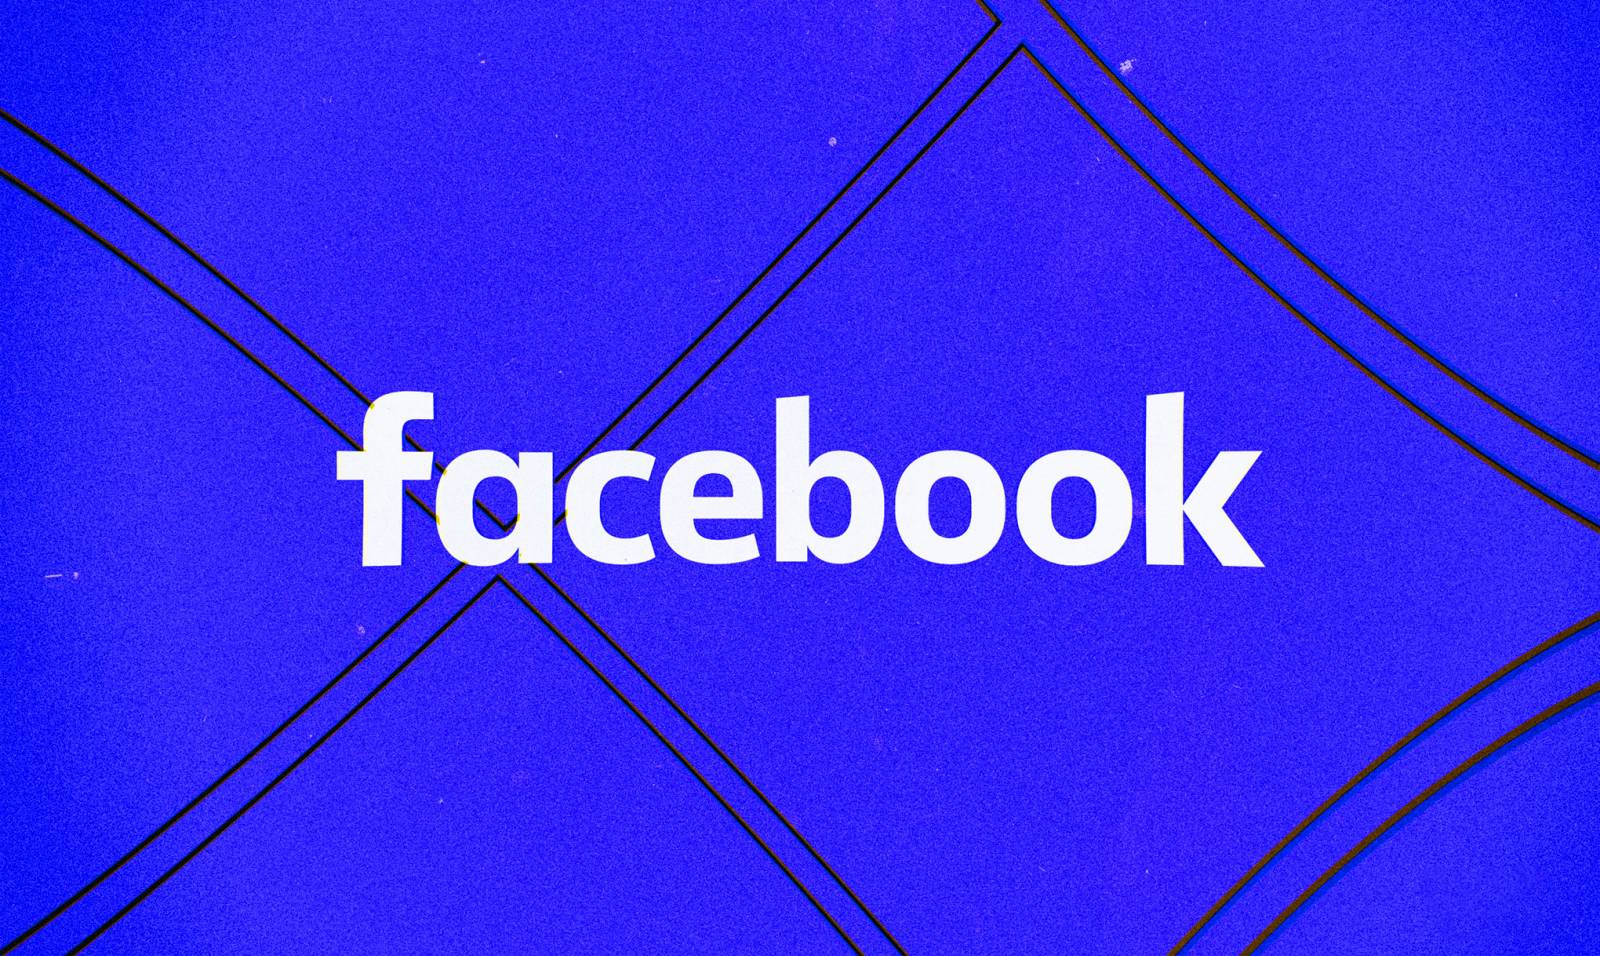 Facebook-opdatering er blevet frigivet til applikationen, hvilke ændringer tilbydes